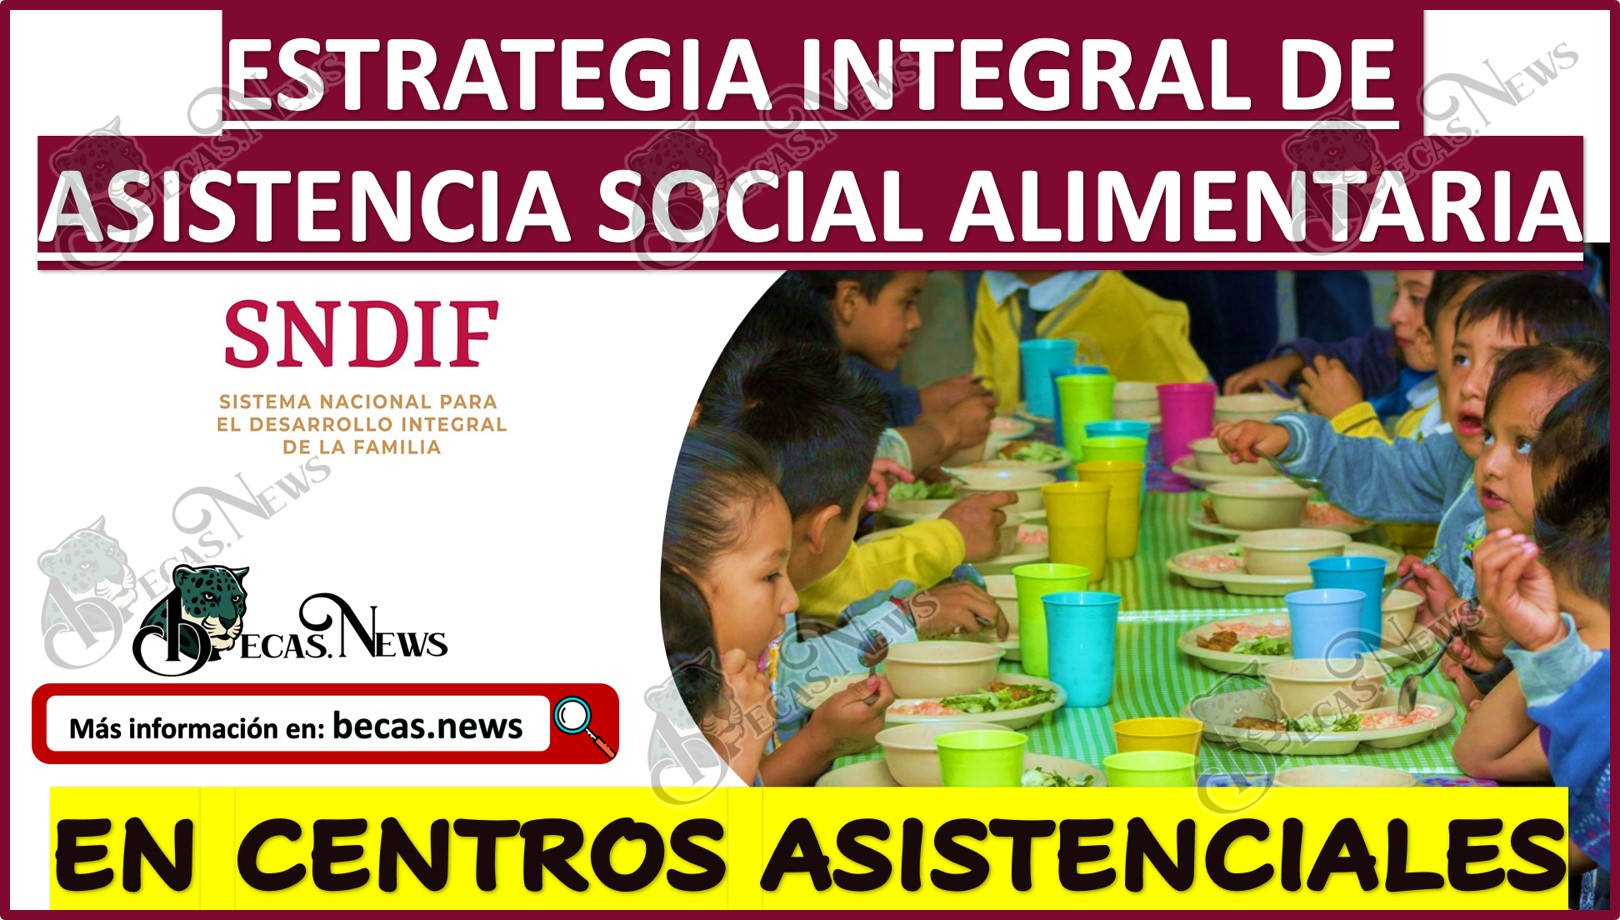 Programa de Estrategia Integral de Asistencia Social Alimentaria en Centros Asistenciales